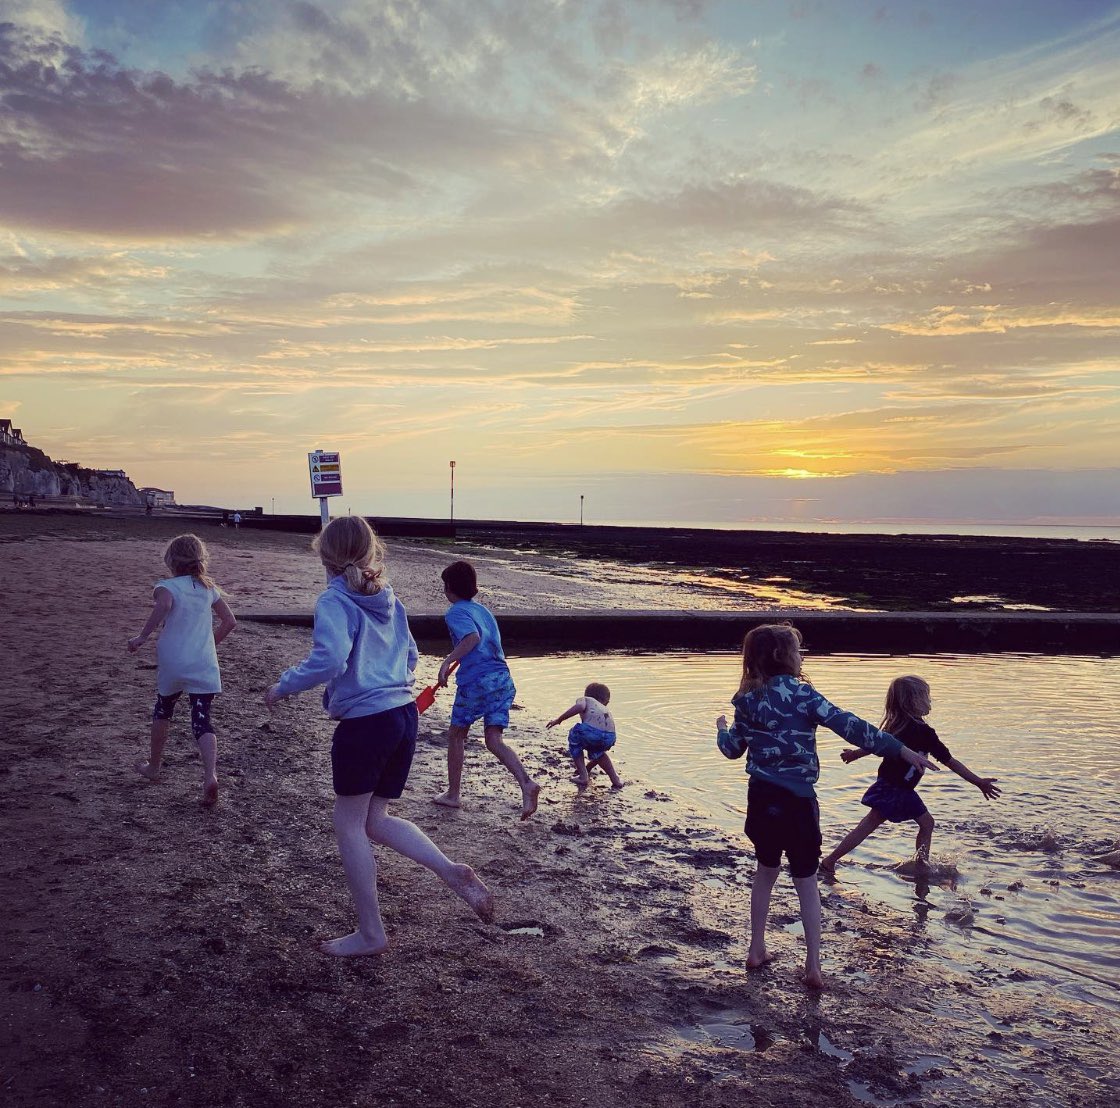 Kids at sunset at Walpole Bay. Such a magical time to play. 
.
.
.
.
.
.
#walpolebay #walpolebaytidalpool #margate #margatesunset #turnerskies #sunsetatsea #sunsetsilhouette #cliftonville #ukbeachholiday #ukstaycation #staycationuk #ohidoliketobebesidetheseaside #familyholiday